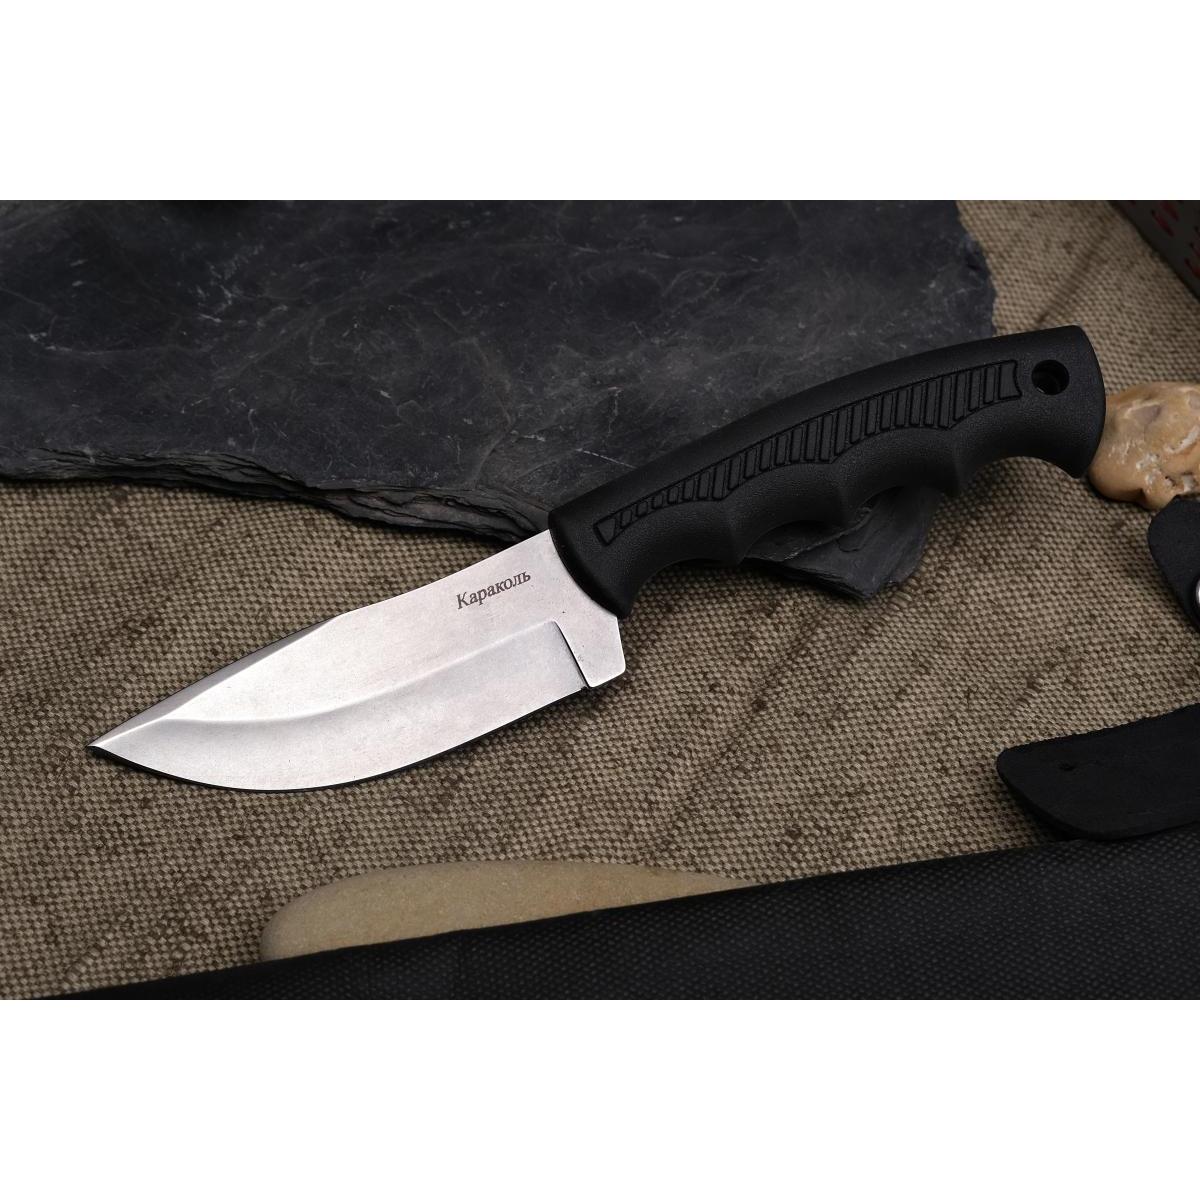 Нож Караколь 03257 (Кизляр)